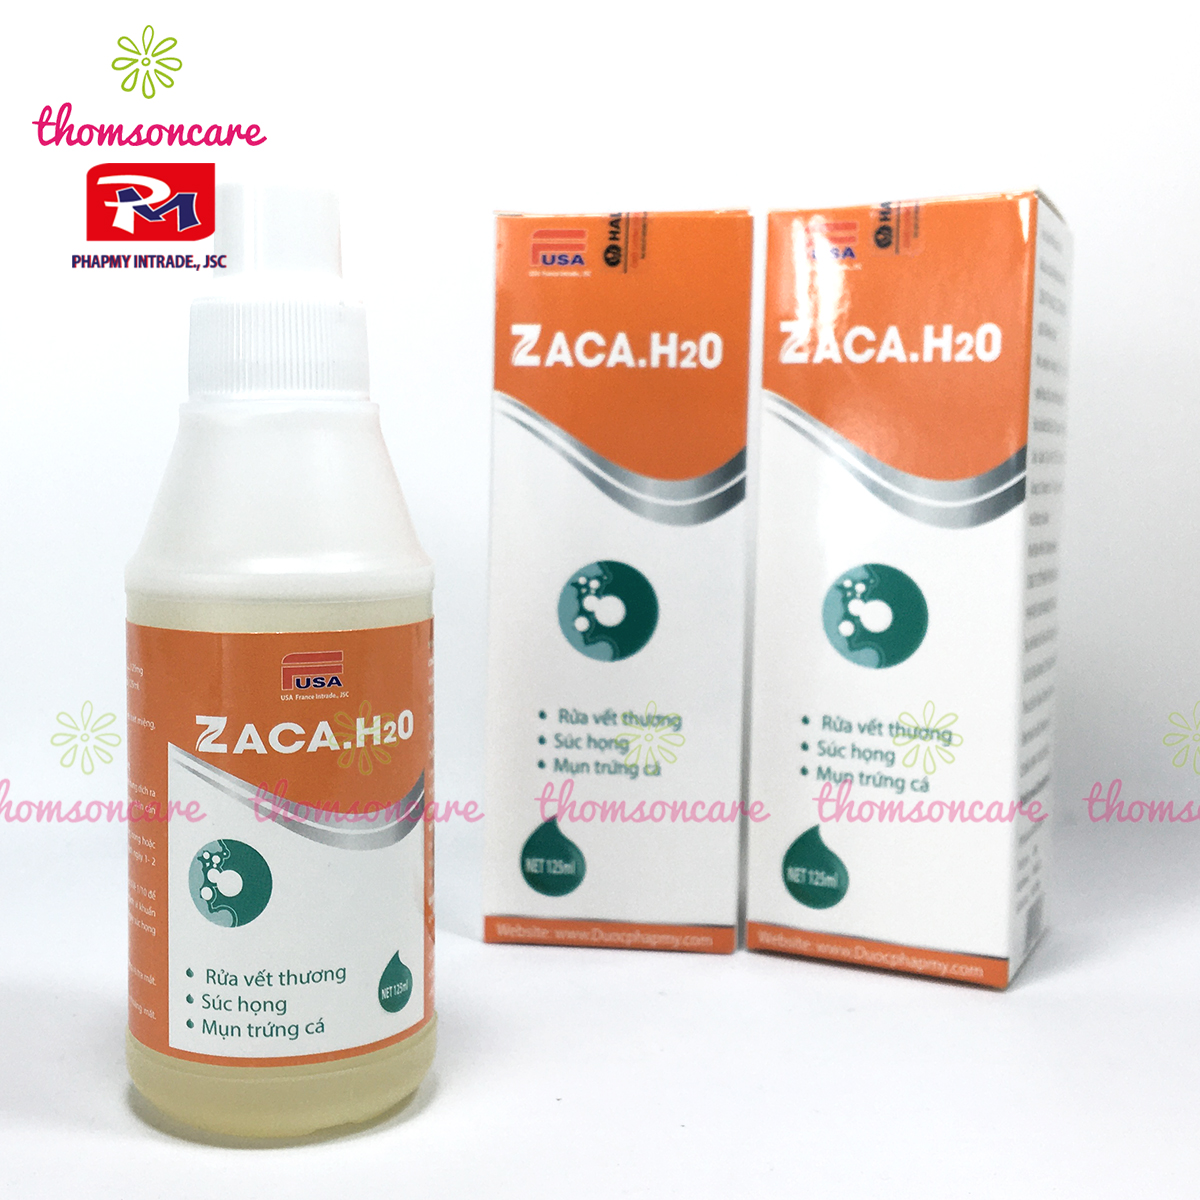 Zaca.H20 - Nước sát trùng, rửa vết thương hở ngoài da, sơ cứu chầy xước tay chân, cồn xát khuẩn